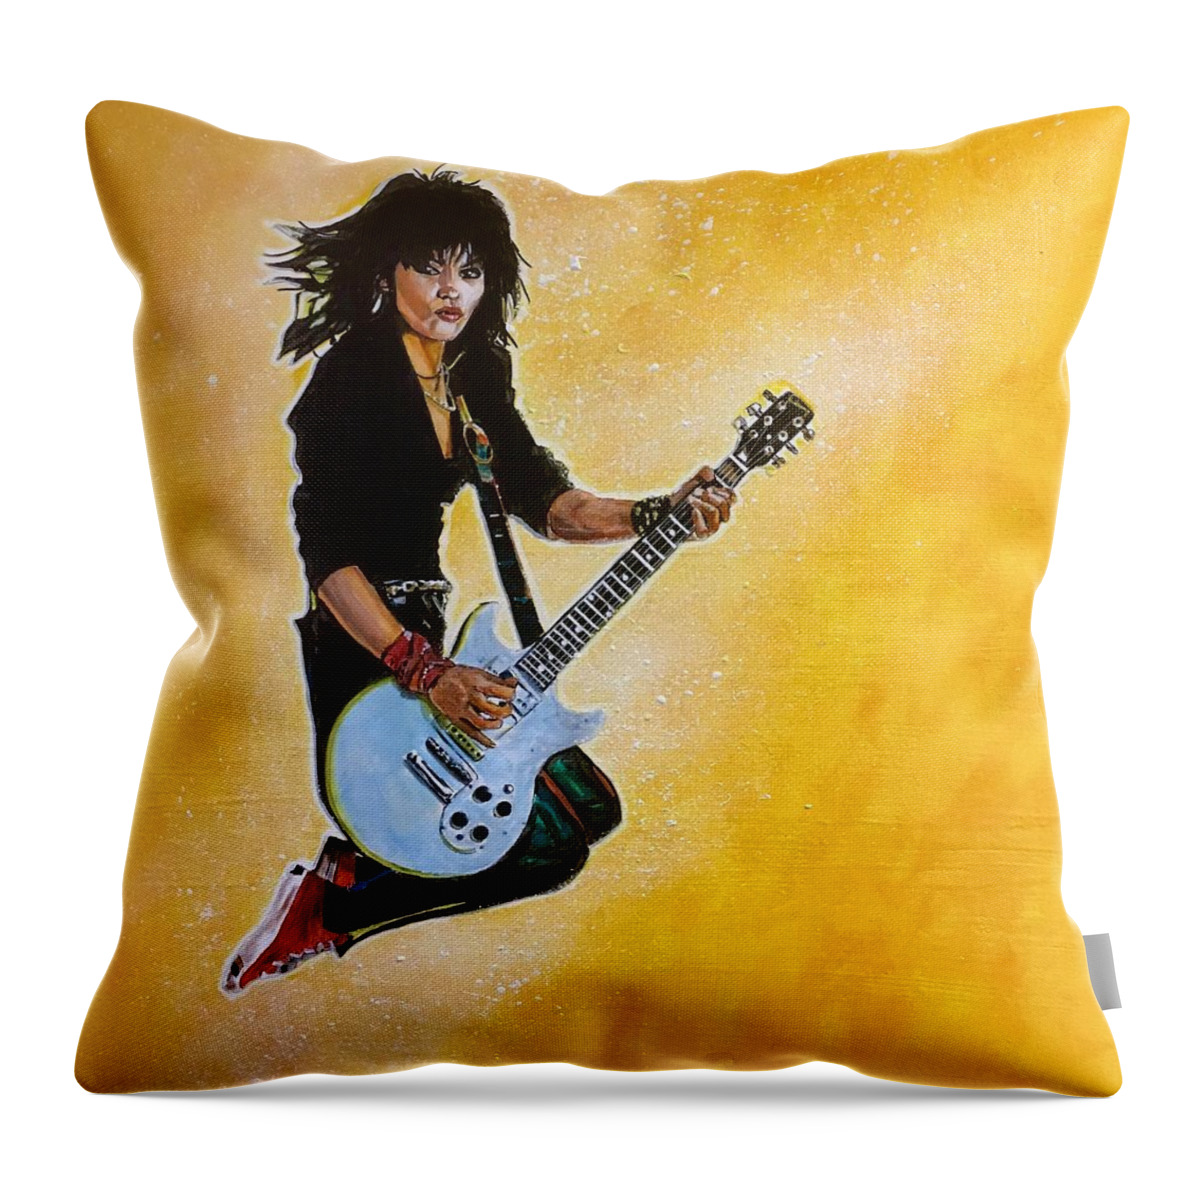 Joan Jett Throw Pillow featuring the painting Joan Jett by Joel Tesch